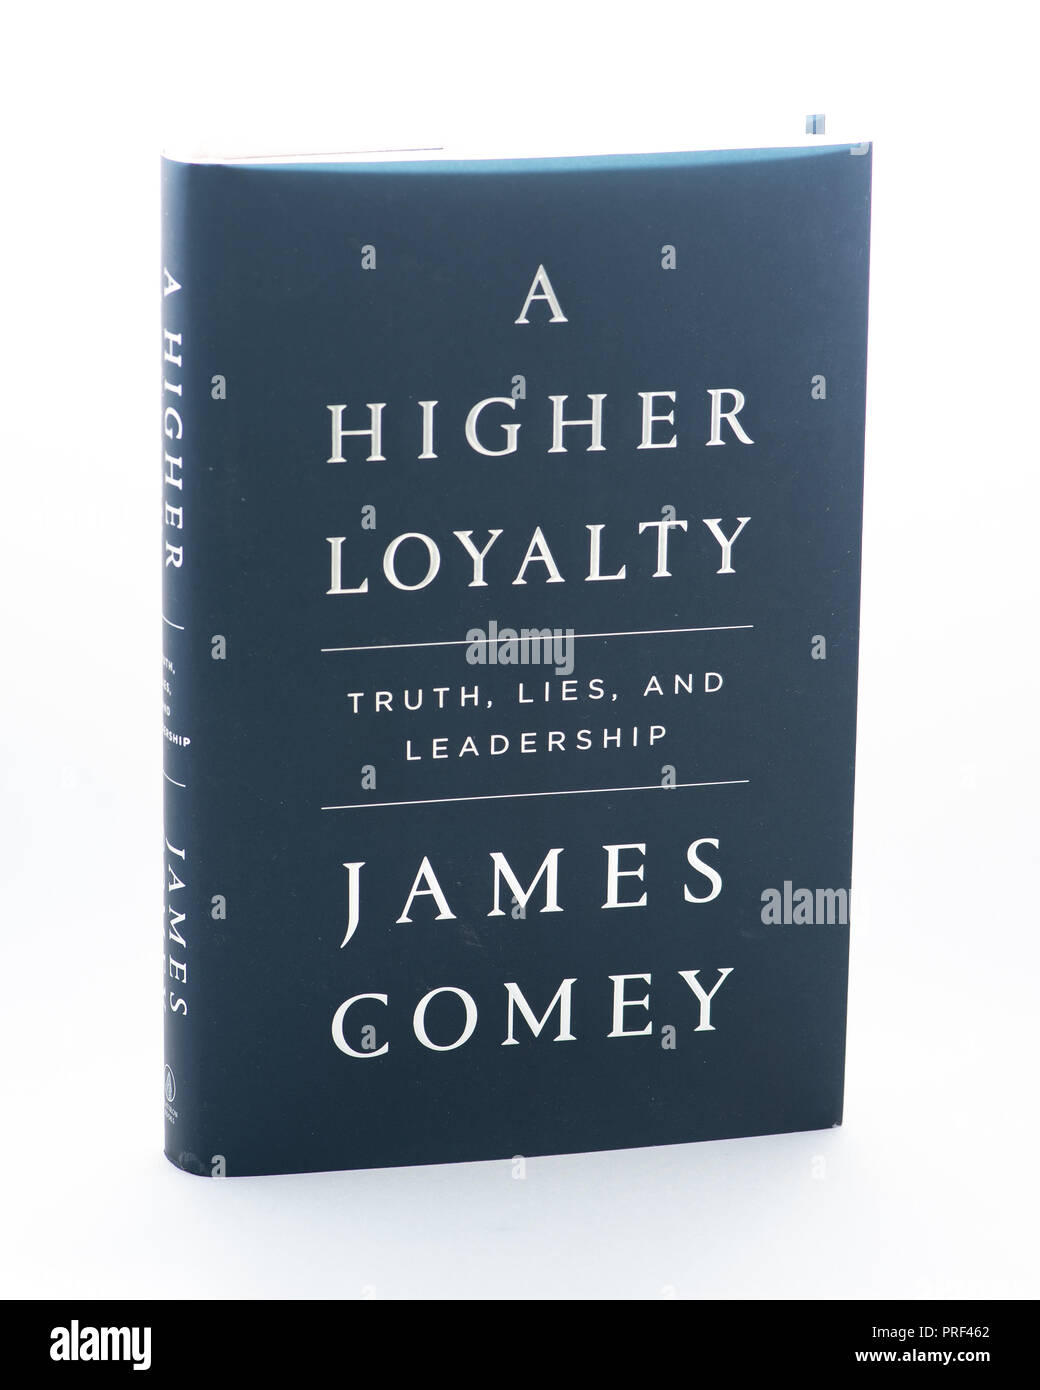 Una mayor fidelidad, un libro escrito por James Comey, acerca del liderazgo, la lealtad, la política y los valores en la era del presidente estadounidense Donald Trump. Foto de stock